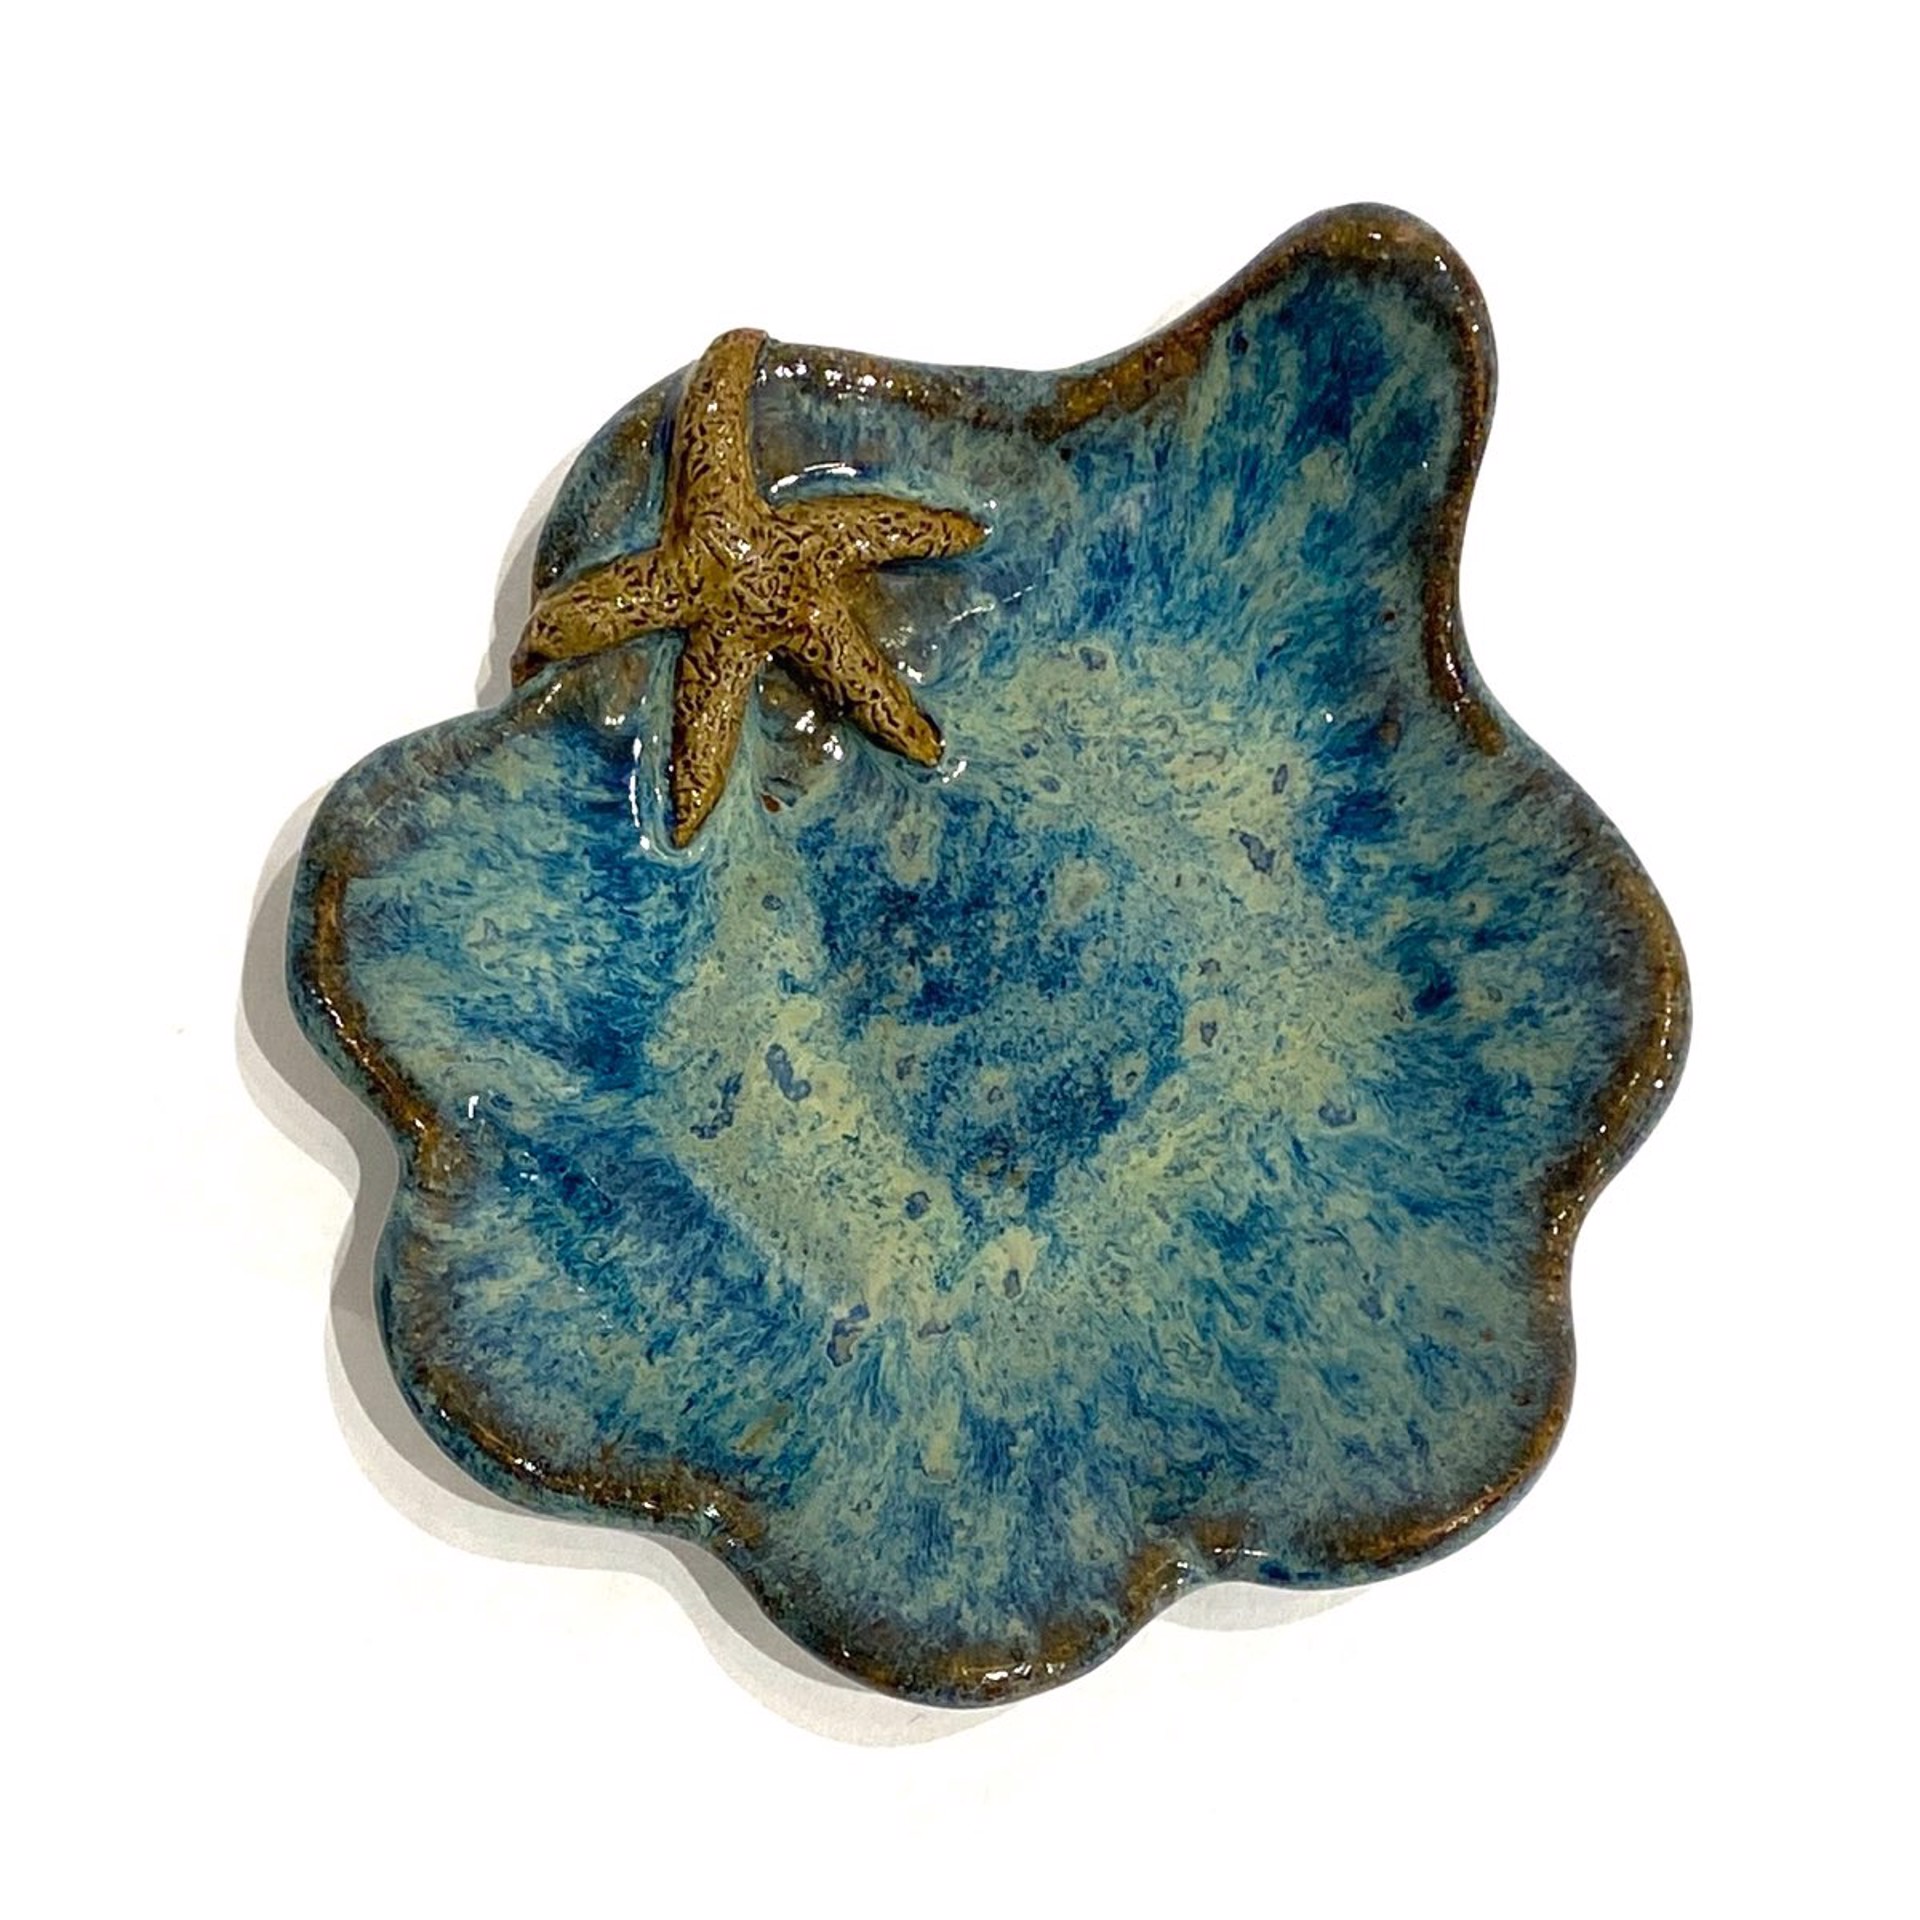 LG23-997 Mini Pool Dish with Starfish (Blue Glaze) by Jim & Steffi Logan